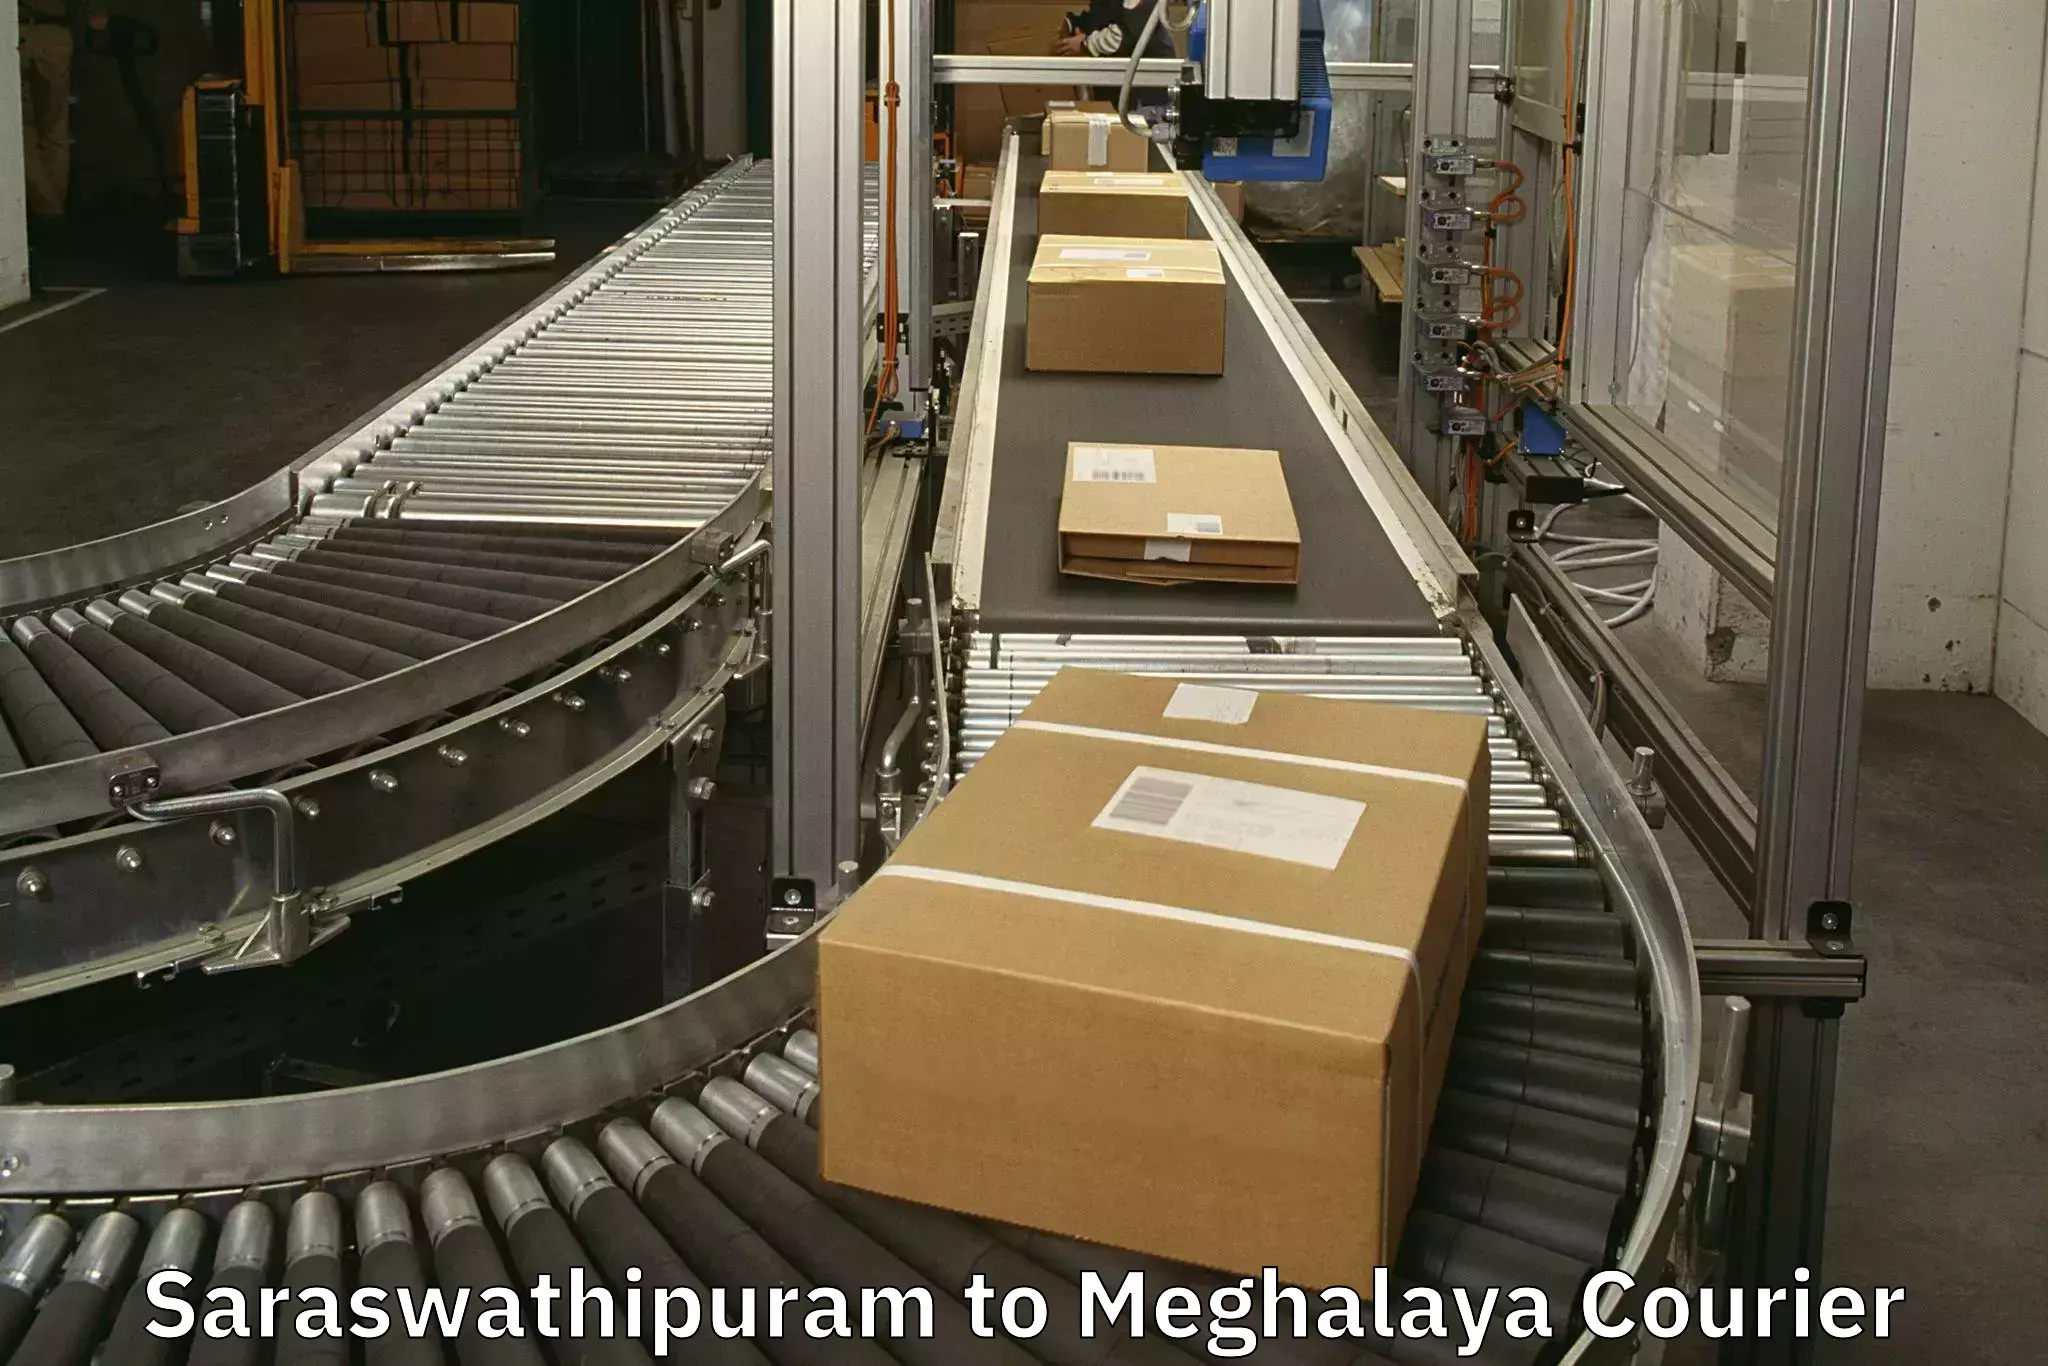 Baggage shipping schedule Saraswathipuram to NIT Meghalaya